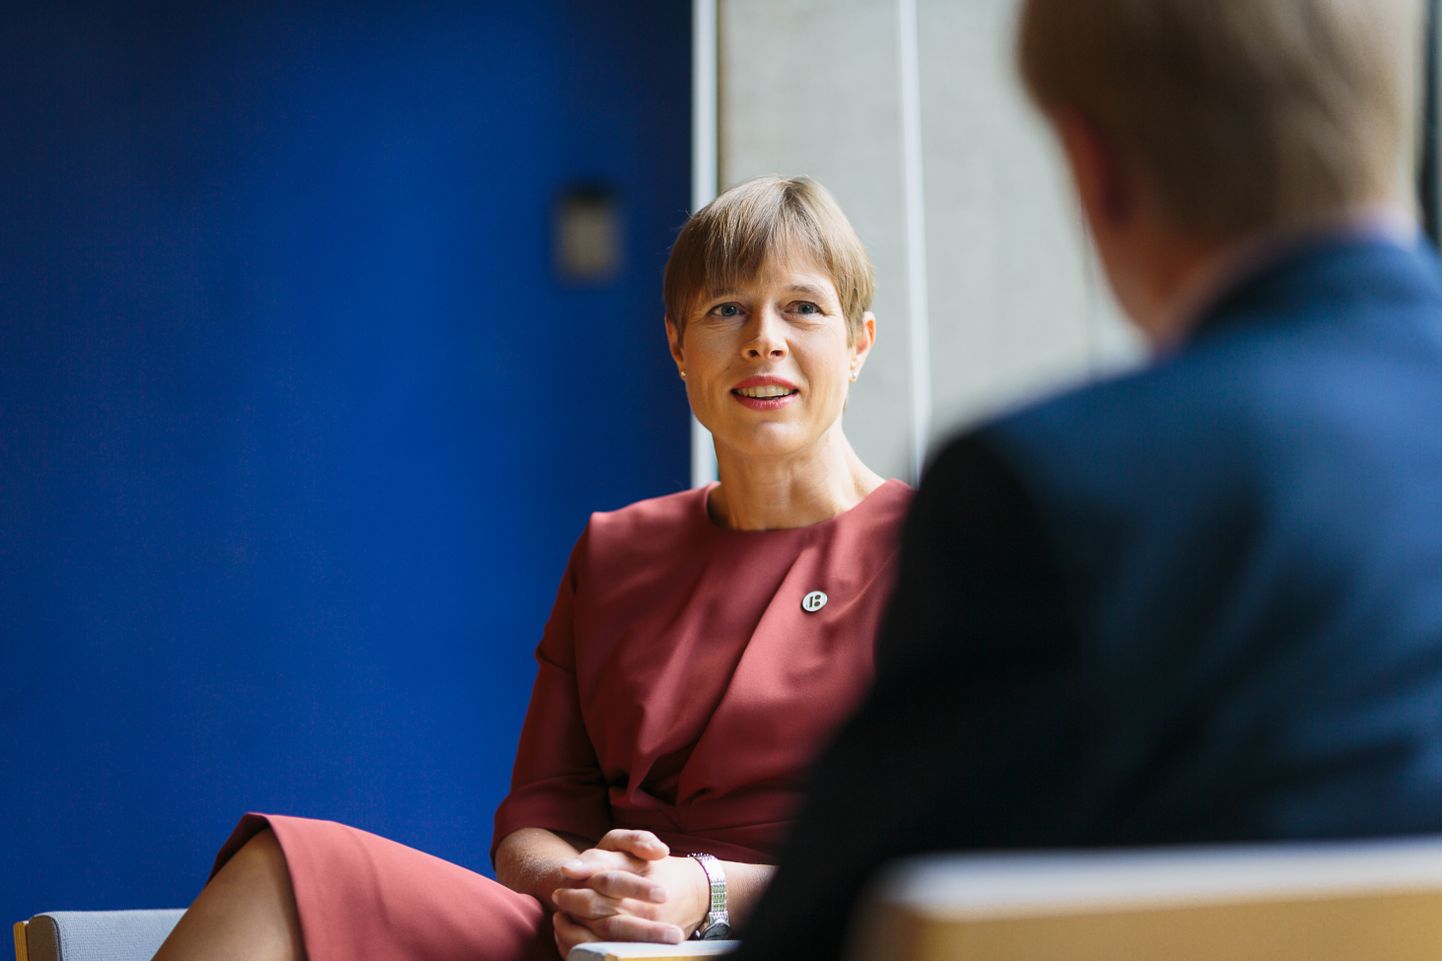 Kersti Kaljulaidi sõnul on tema tulek Narva eelkõige toetusavaldus sellele linnale ja inimestele ajal, mil nad on väljumas natuke nukrast postindustriaalsest perioodist. ILJA SMIRNOV